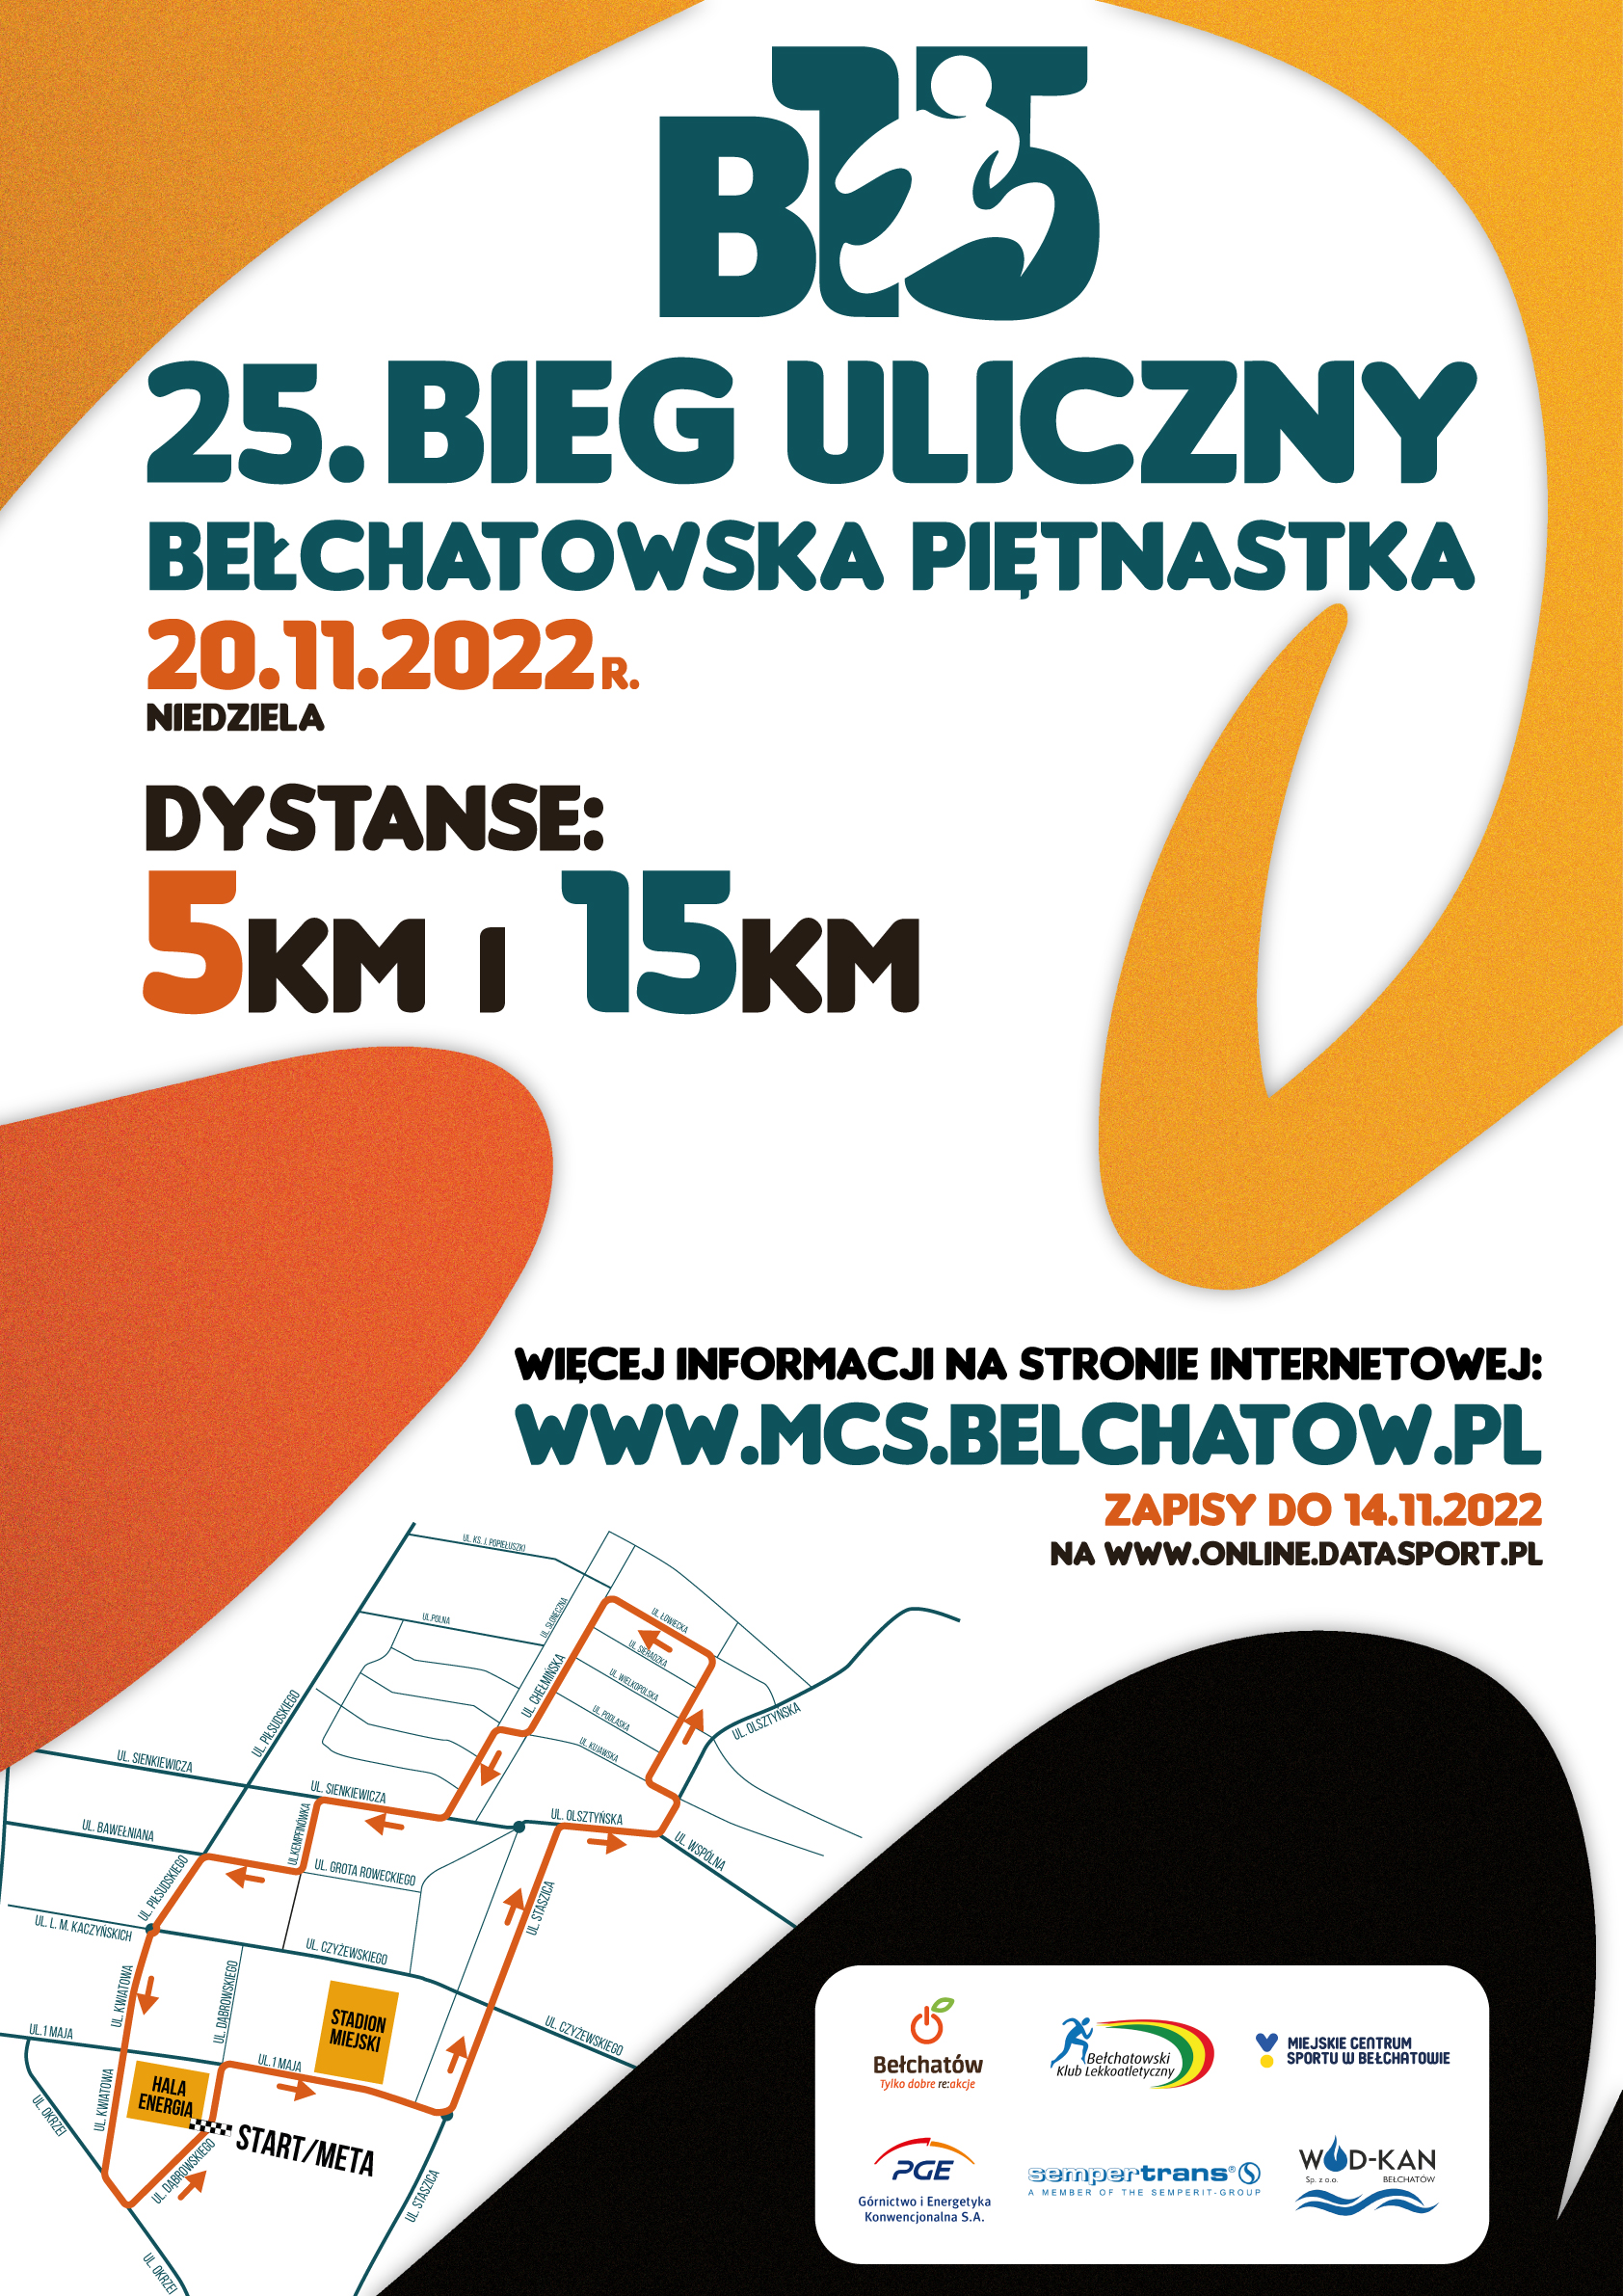 grafika przedstawia trasę wraz z nazwami ulic, logotypem i zaznaczonymi ulicami do 25. Biegu Ulicznego "Bełchatowska Piętnastka"